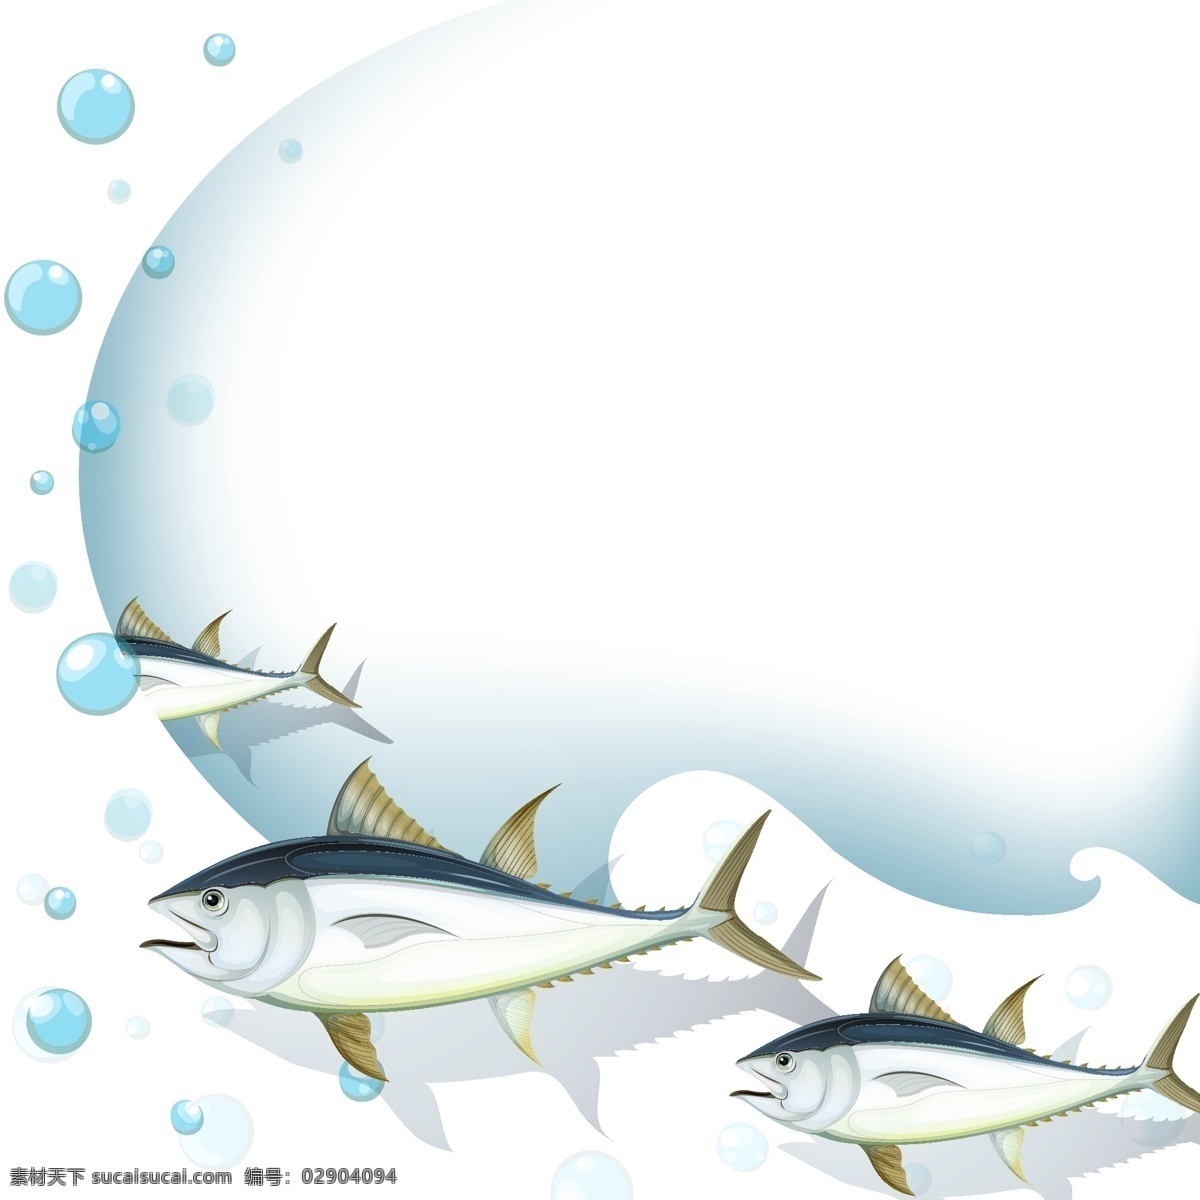 鱼的背景设计 背景 鱼 动物 壁纸 颜色 丰富多彩 气泡 色彩 丰富的背景 背景色 彩色 鱼类 有色